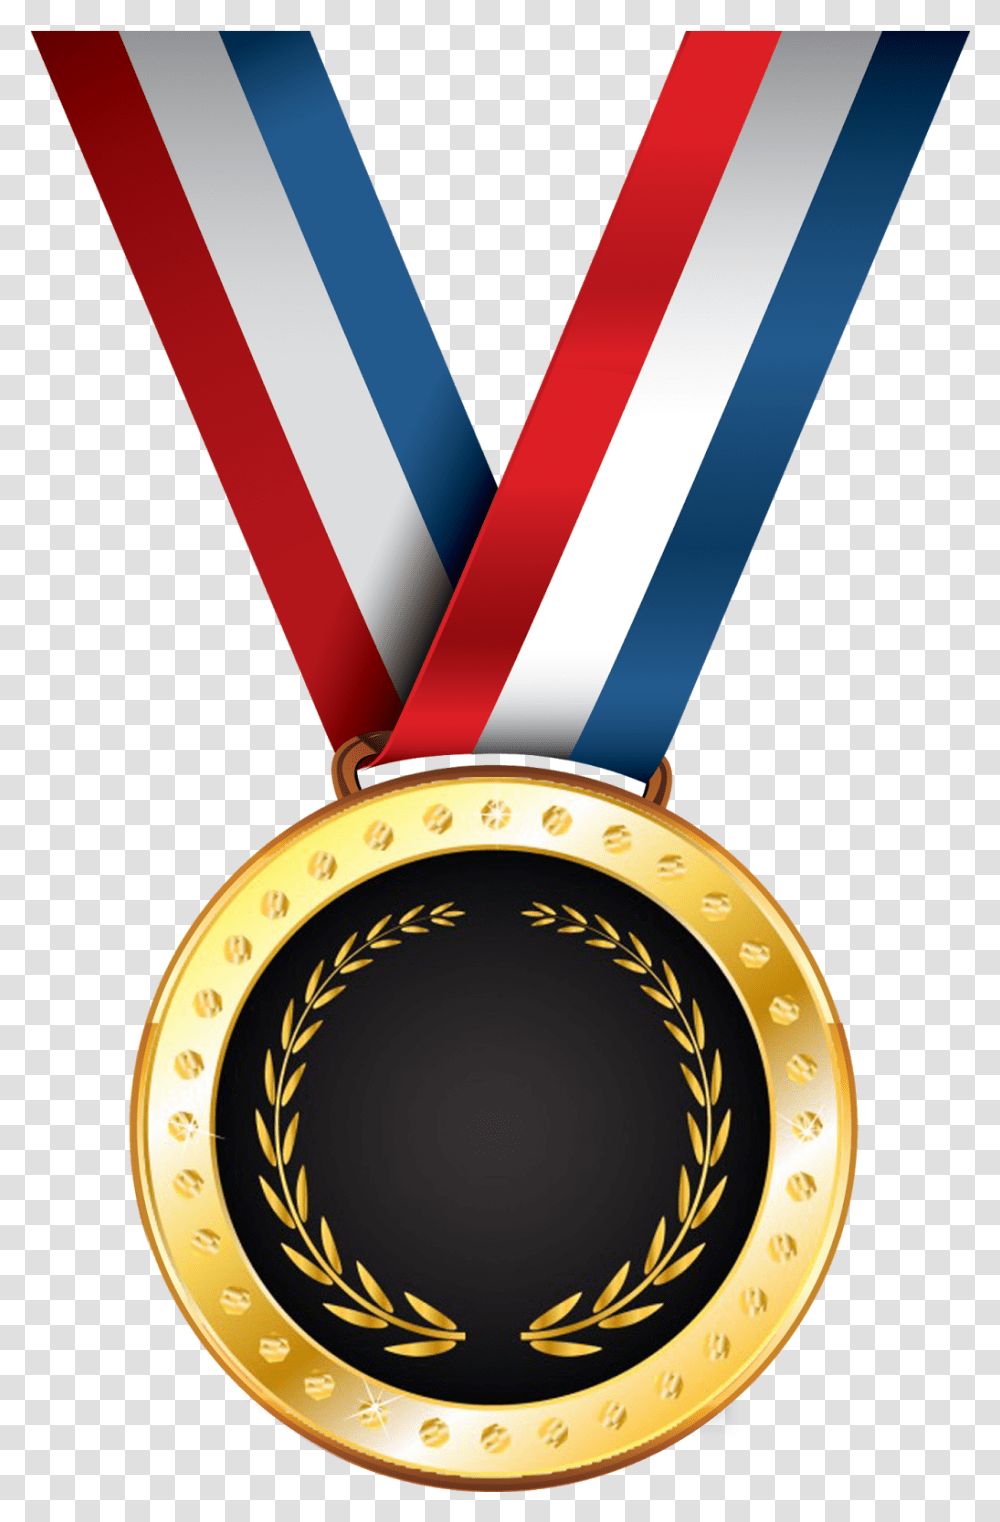 Format Medal Award Medal Clipart, Gold, Trophy, Gold Medal, Wristwatch Transparent Png